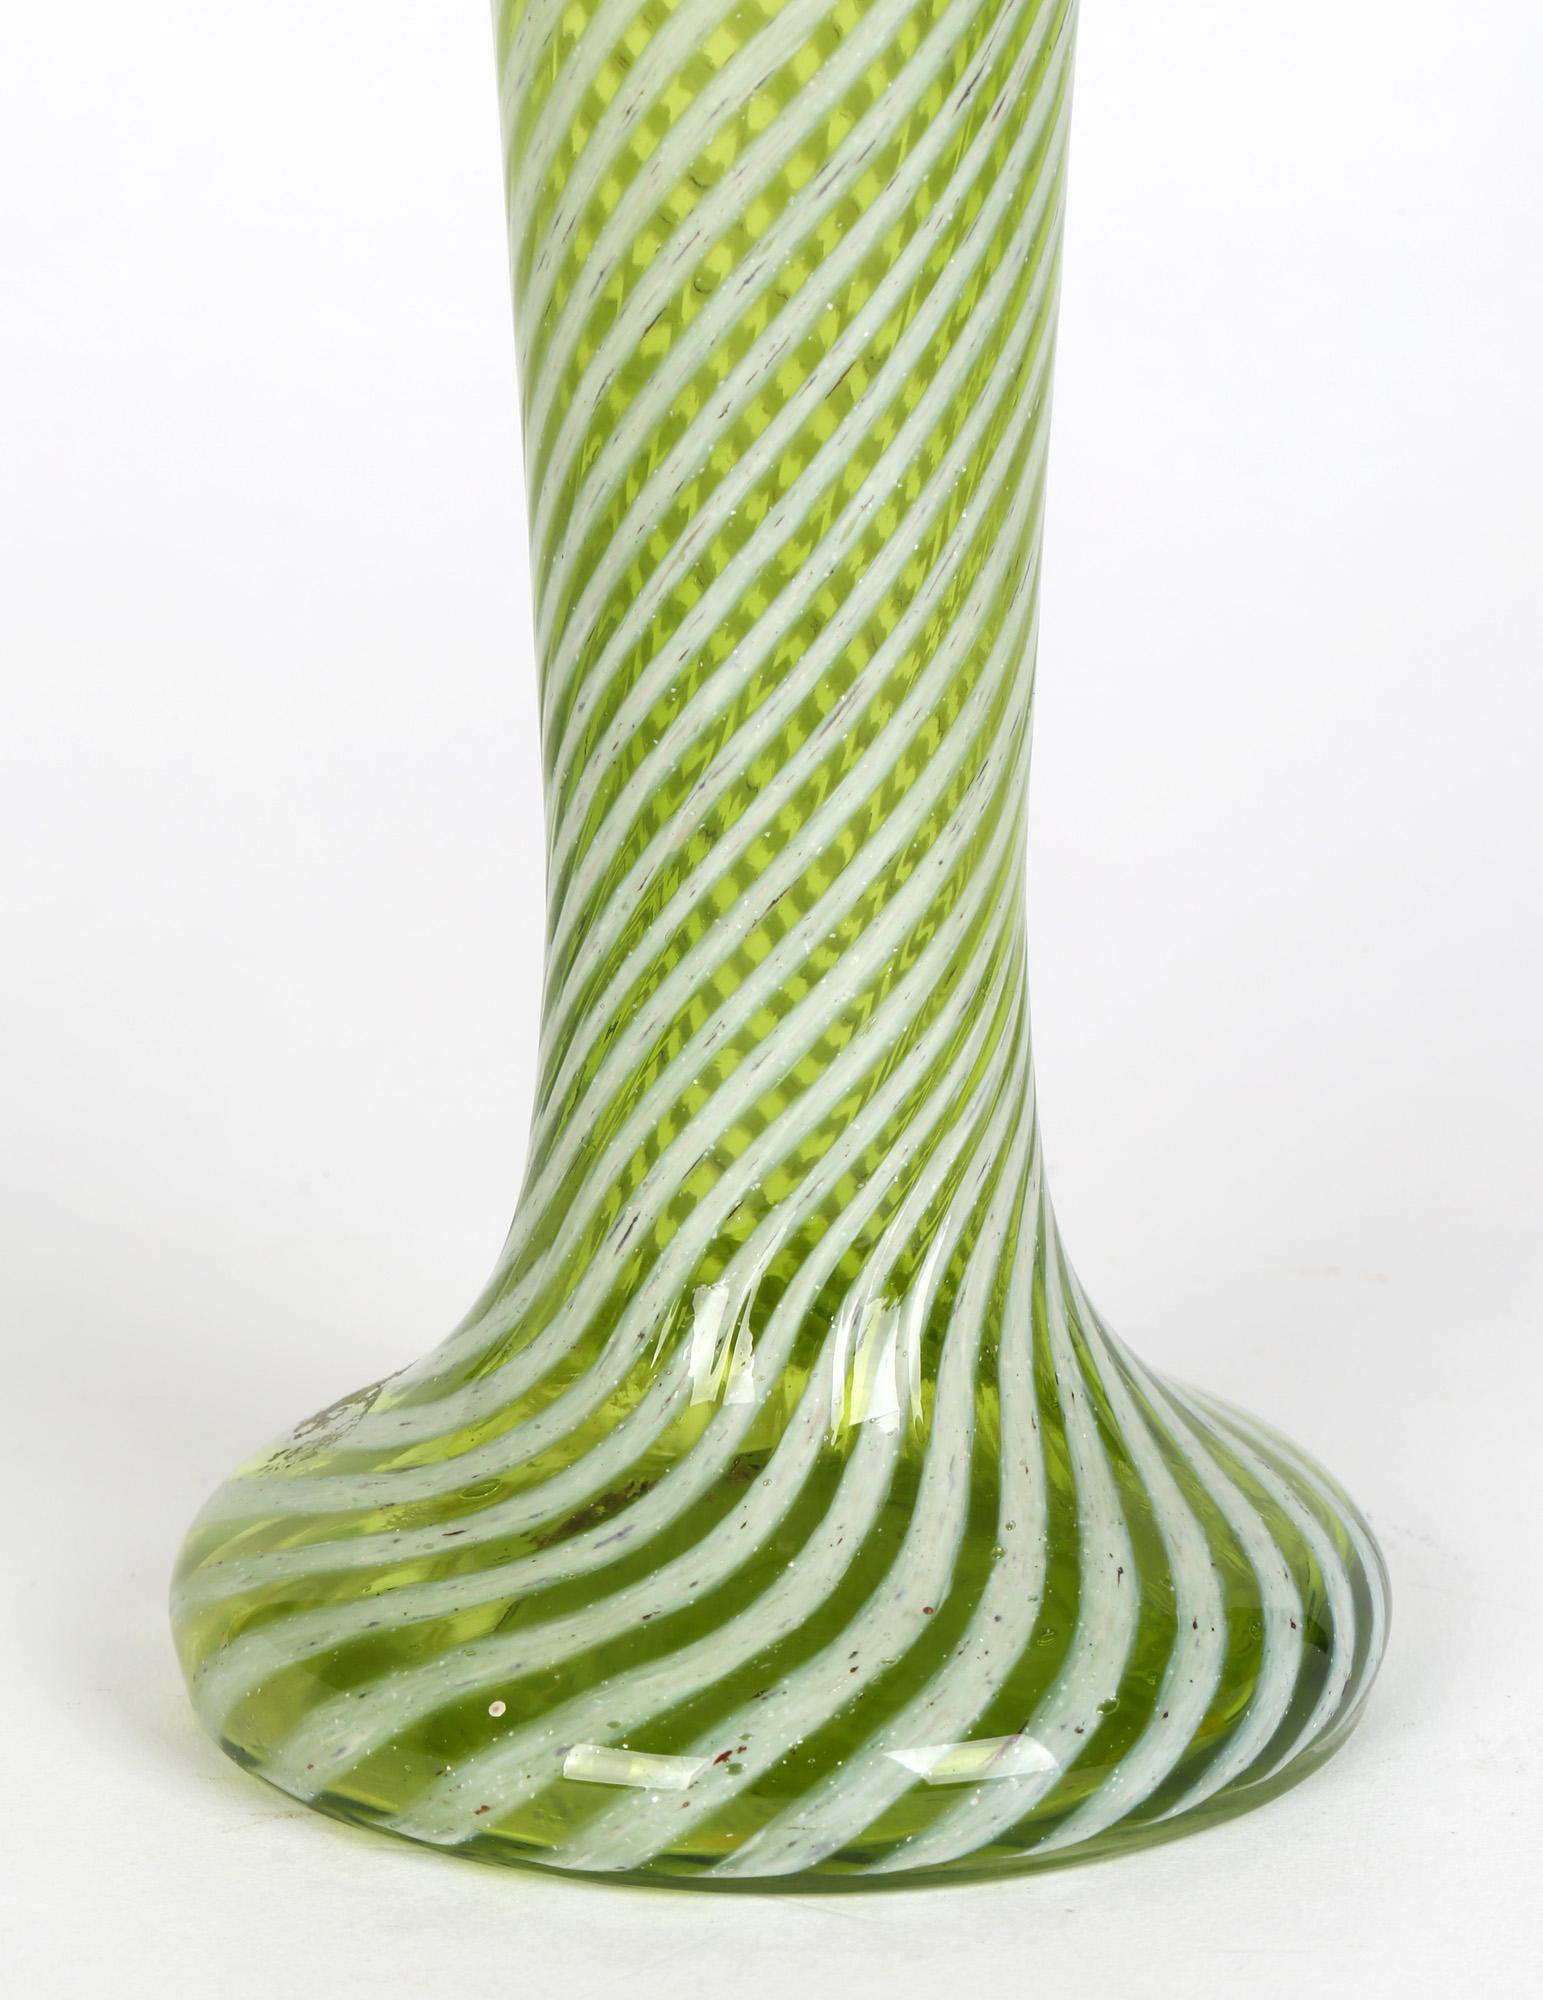 Un élégant et élégant vase ancien en verre vert à traîne blanche, probablement anglais et datant d'environ 1890. Ce grand vase élancé possède une base creuse arrondie et trapue, un haut col en forme de trompette et un large sommet en forme de fleur.